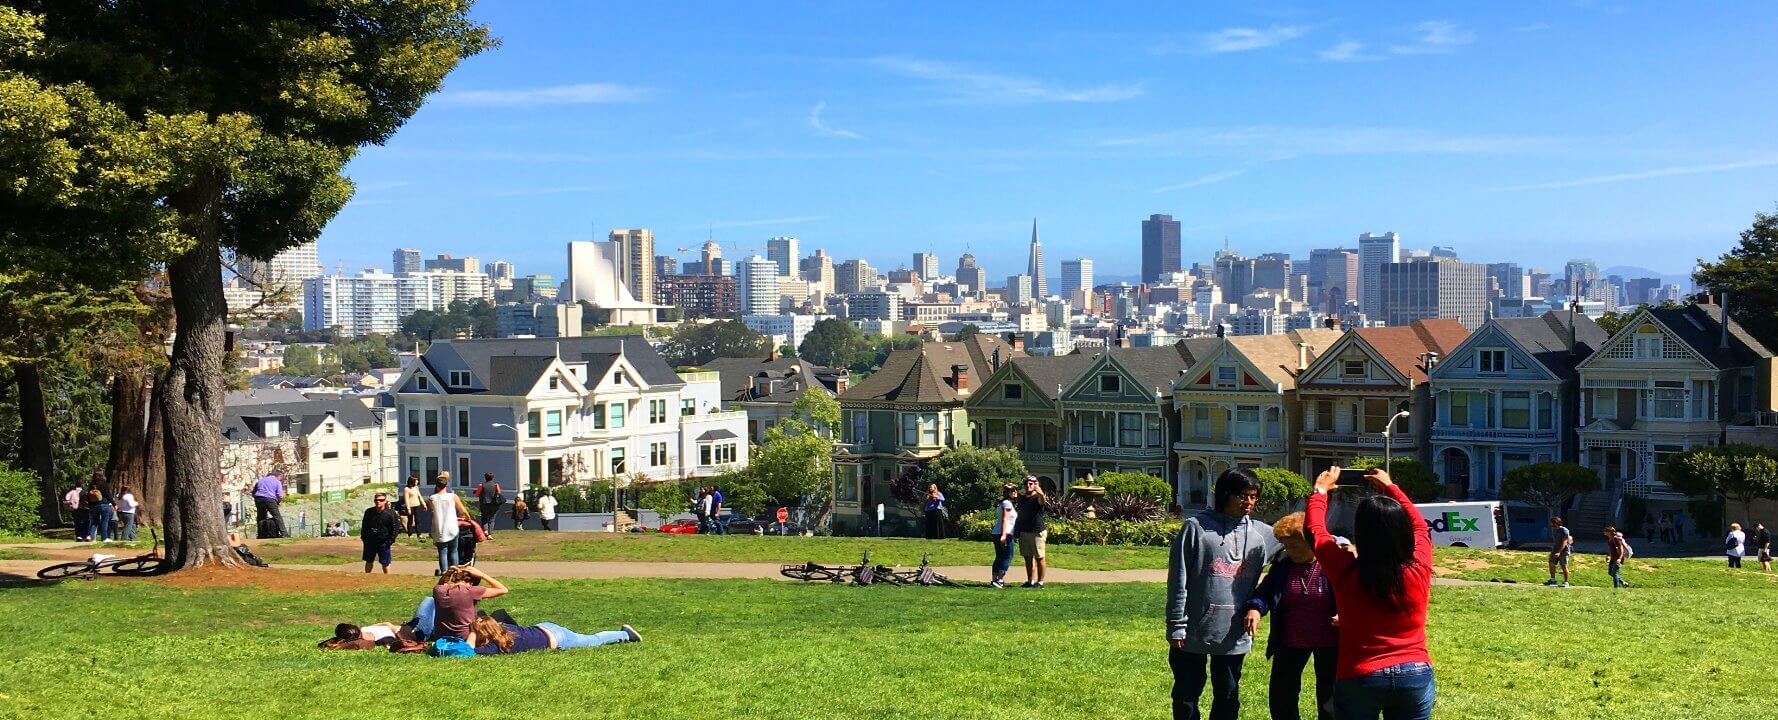 旧金山最佳半日私人导游景点和景点